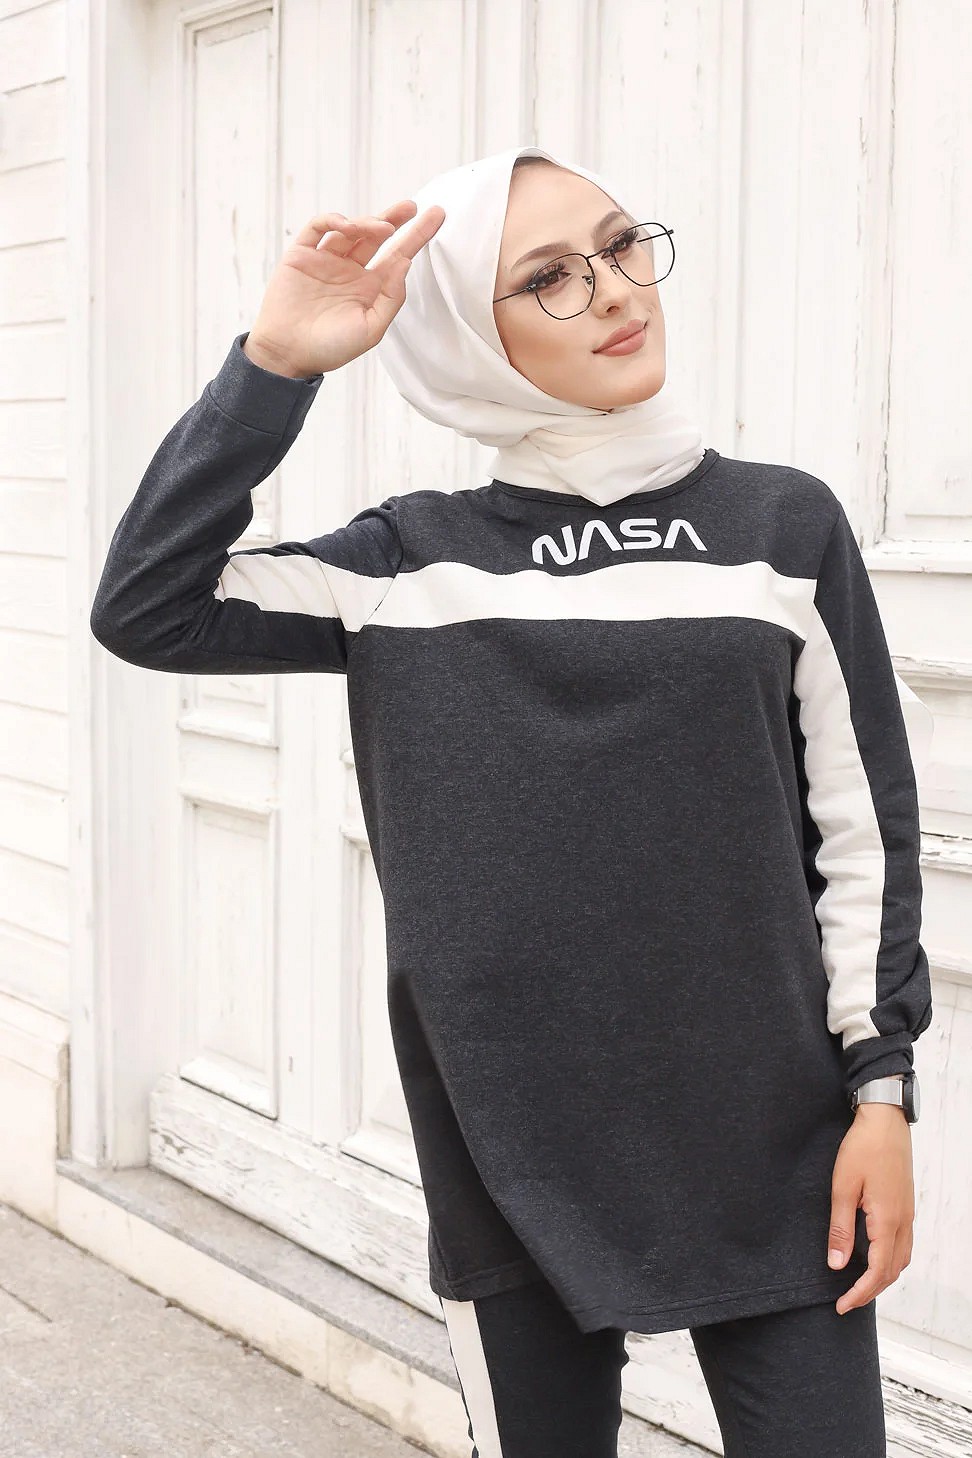 Ensemble survêtement pour femme imprimé NASA (Hijab sport pas cher -  Grande taille disponible) - Couleur Gris foncé chiné - Prêt à porter et  accessoires sur